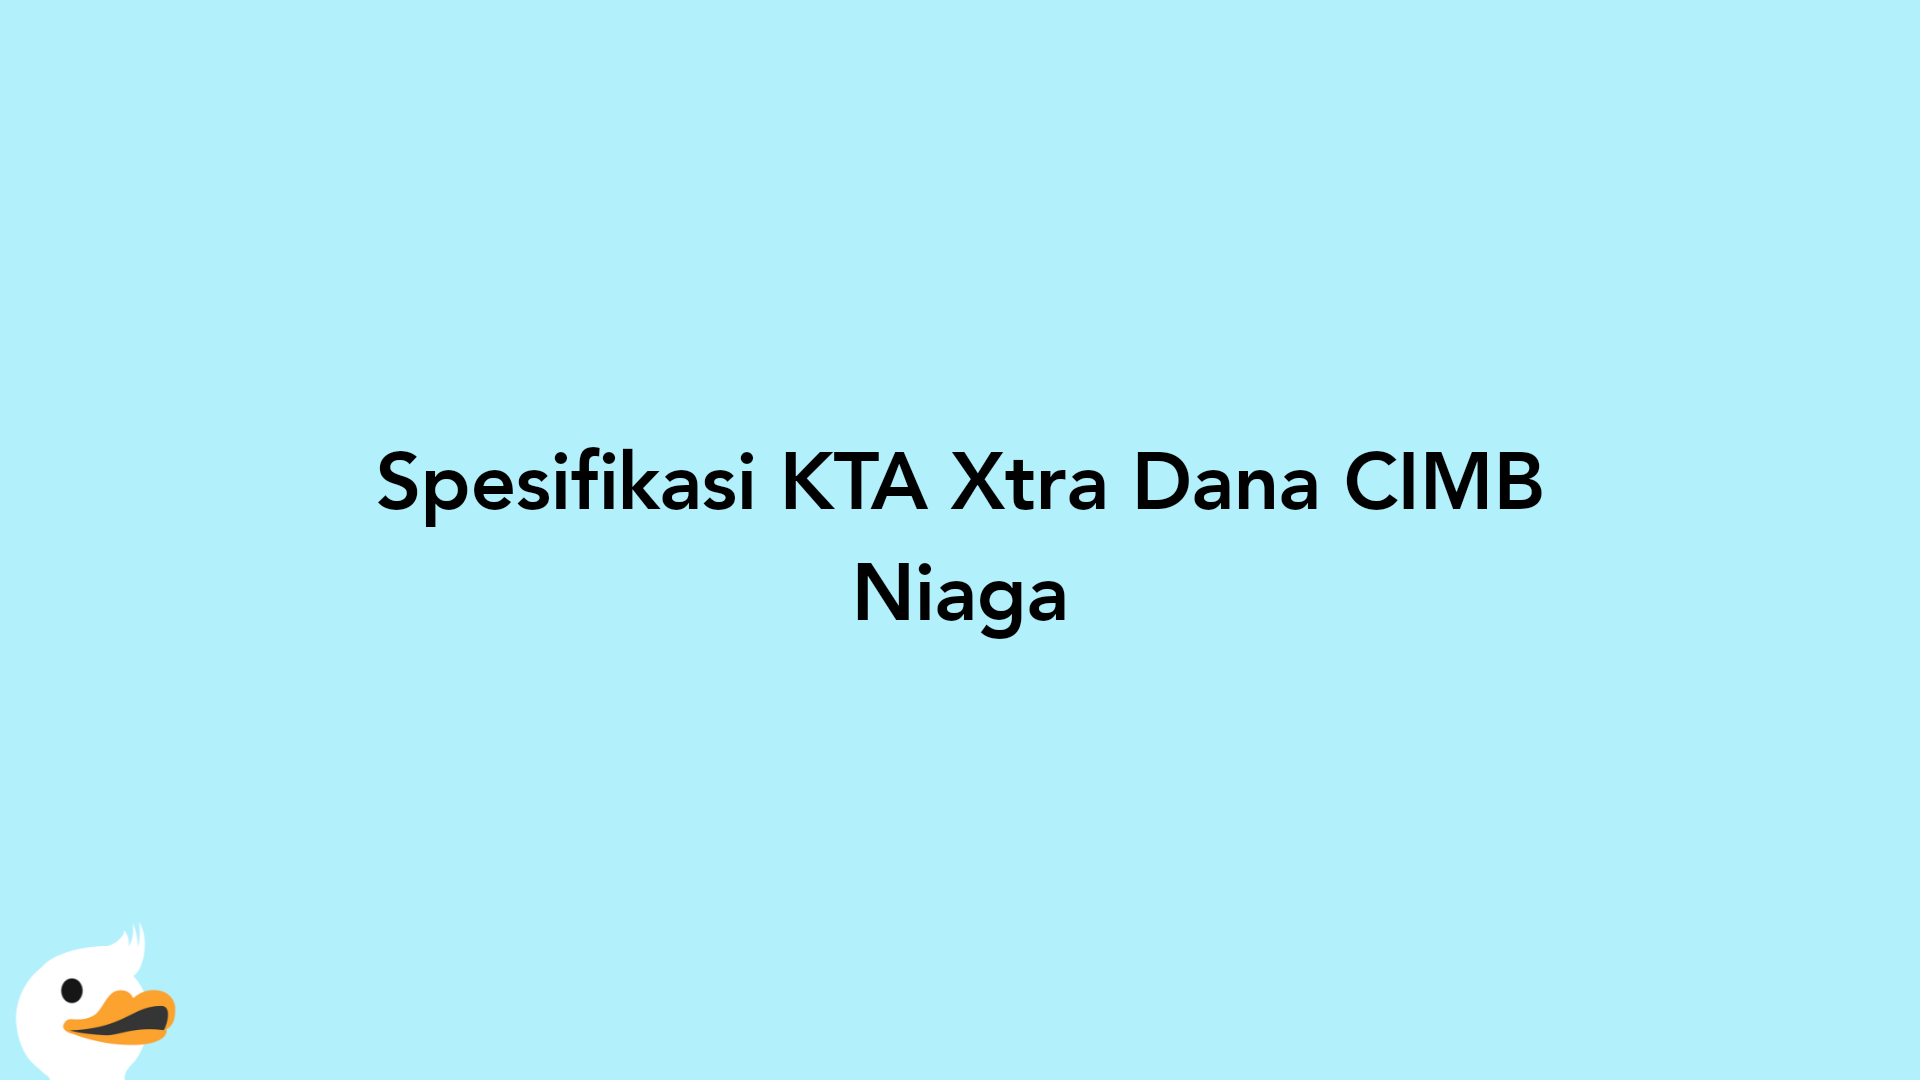 Spesifikasi KTA Xtra Dana CIMB Niaga